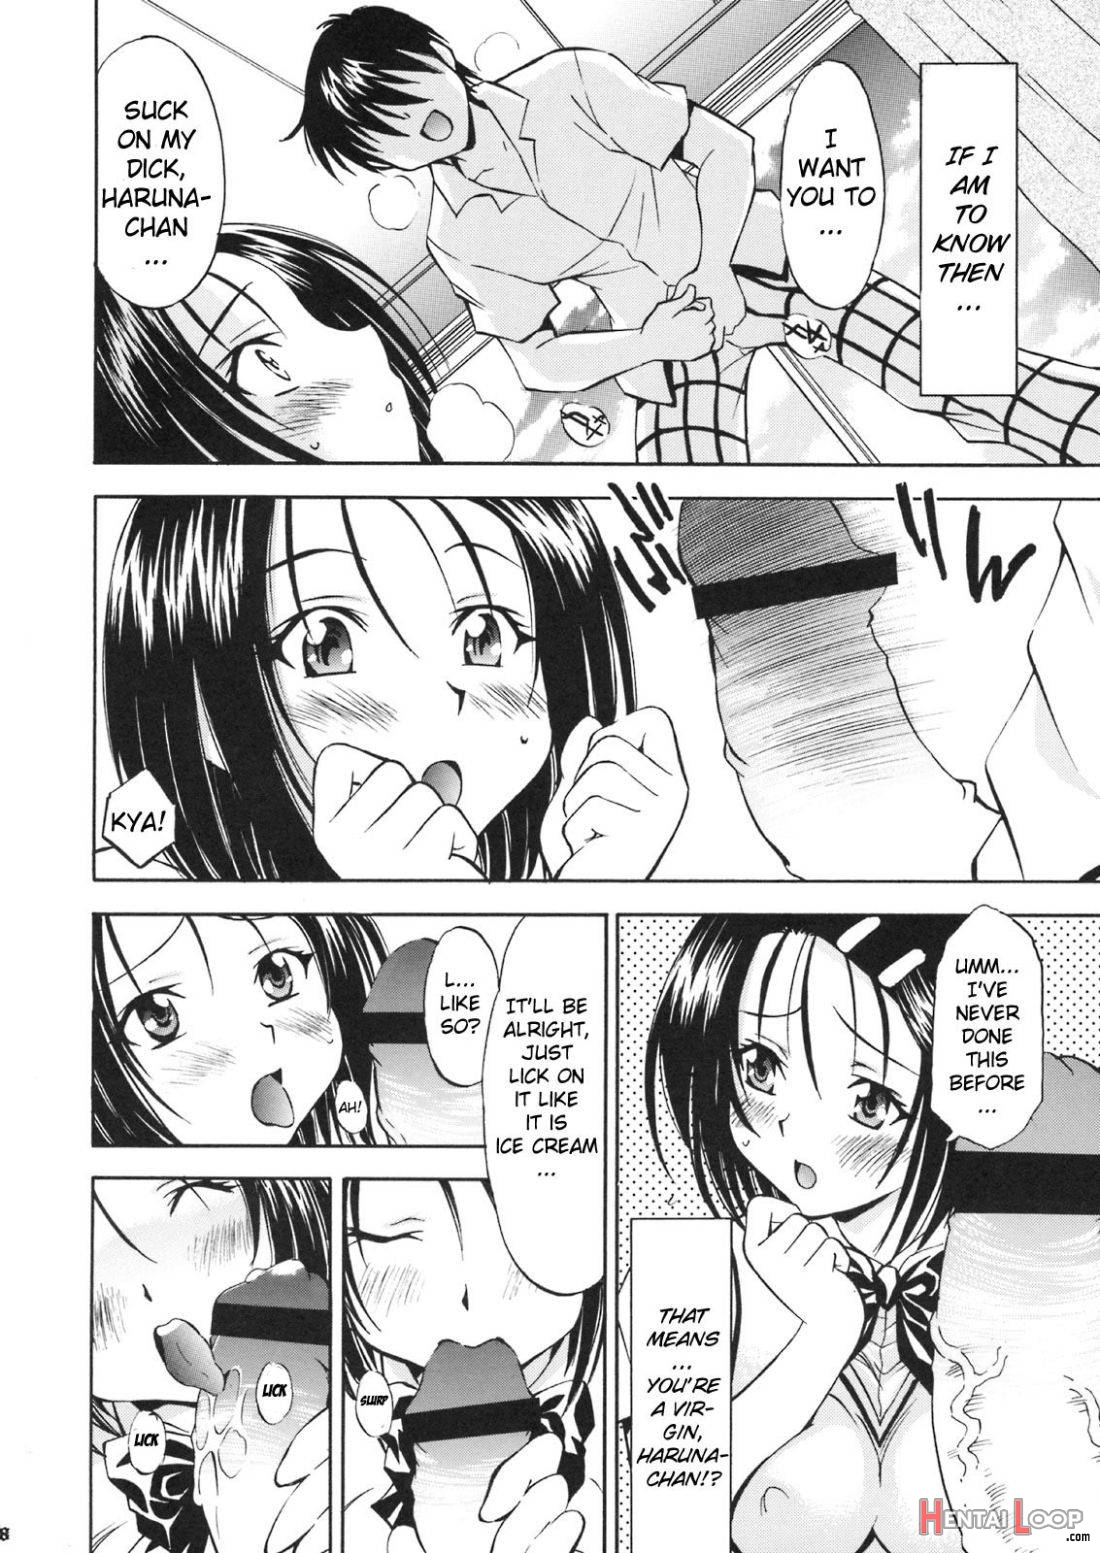 Troublekko ~Haruna & Yui~ page 5